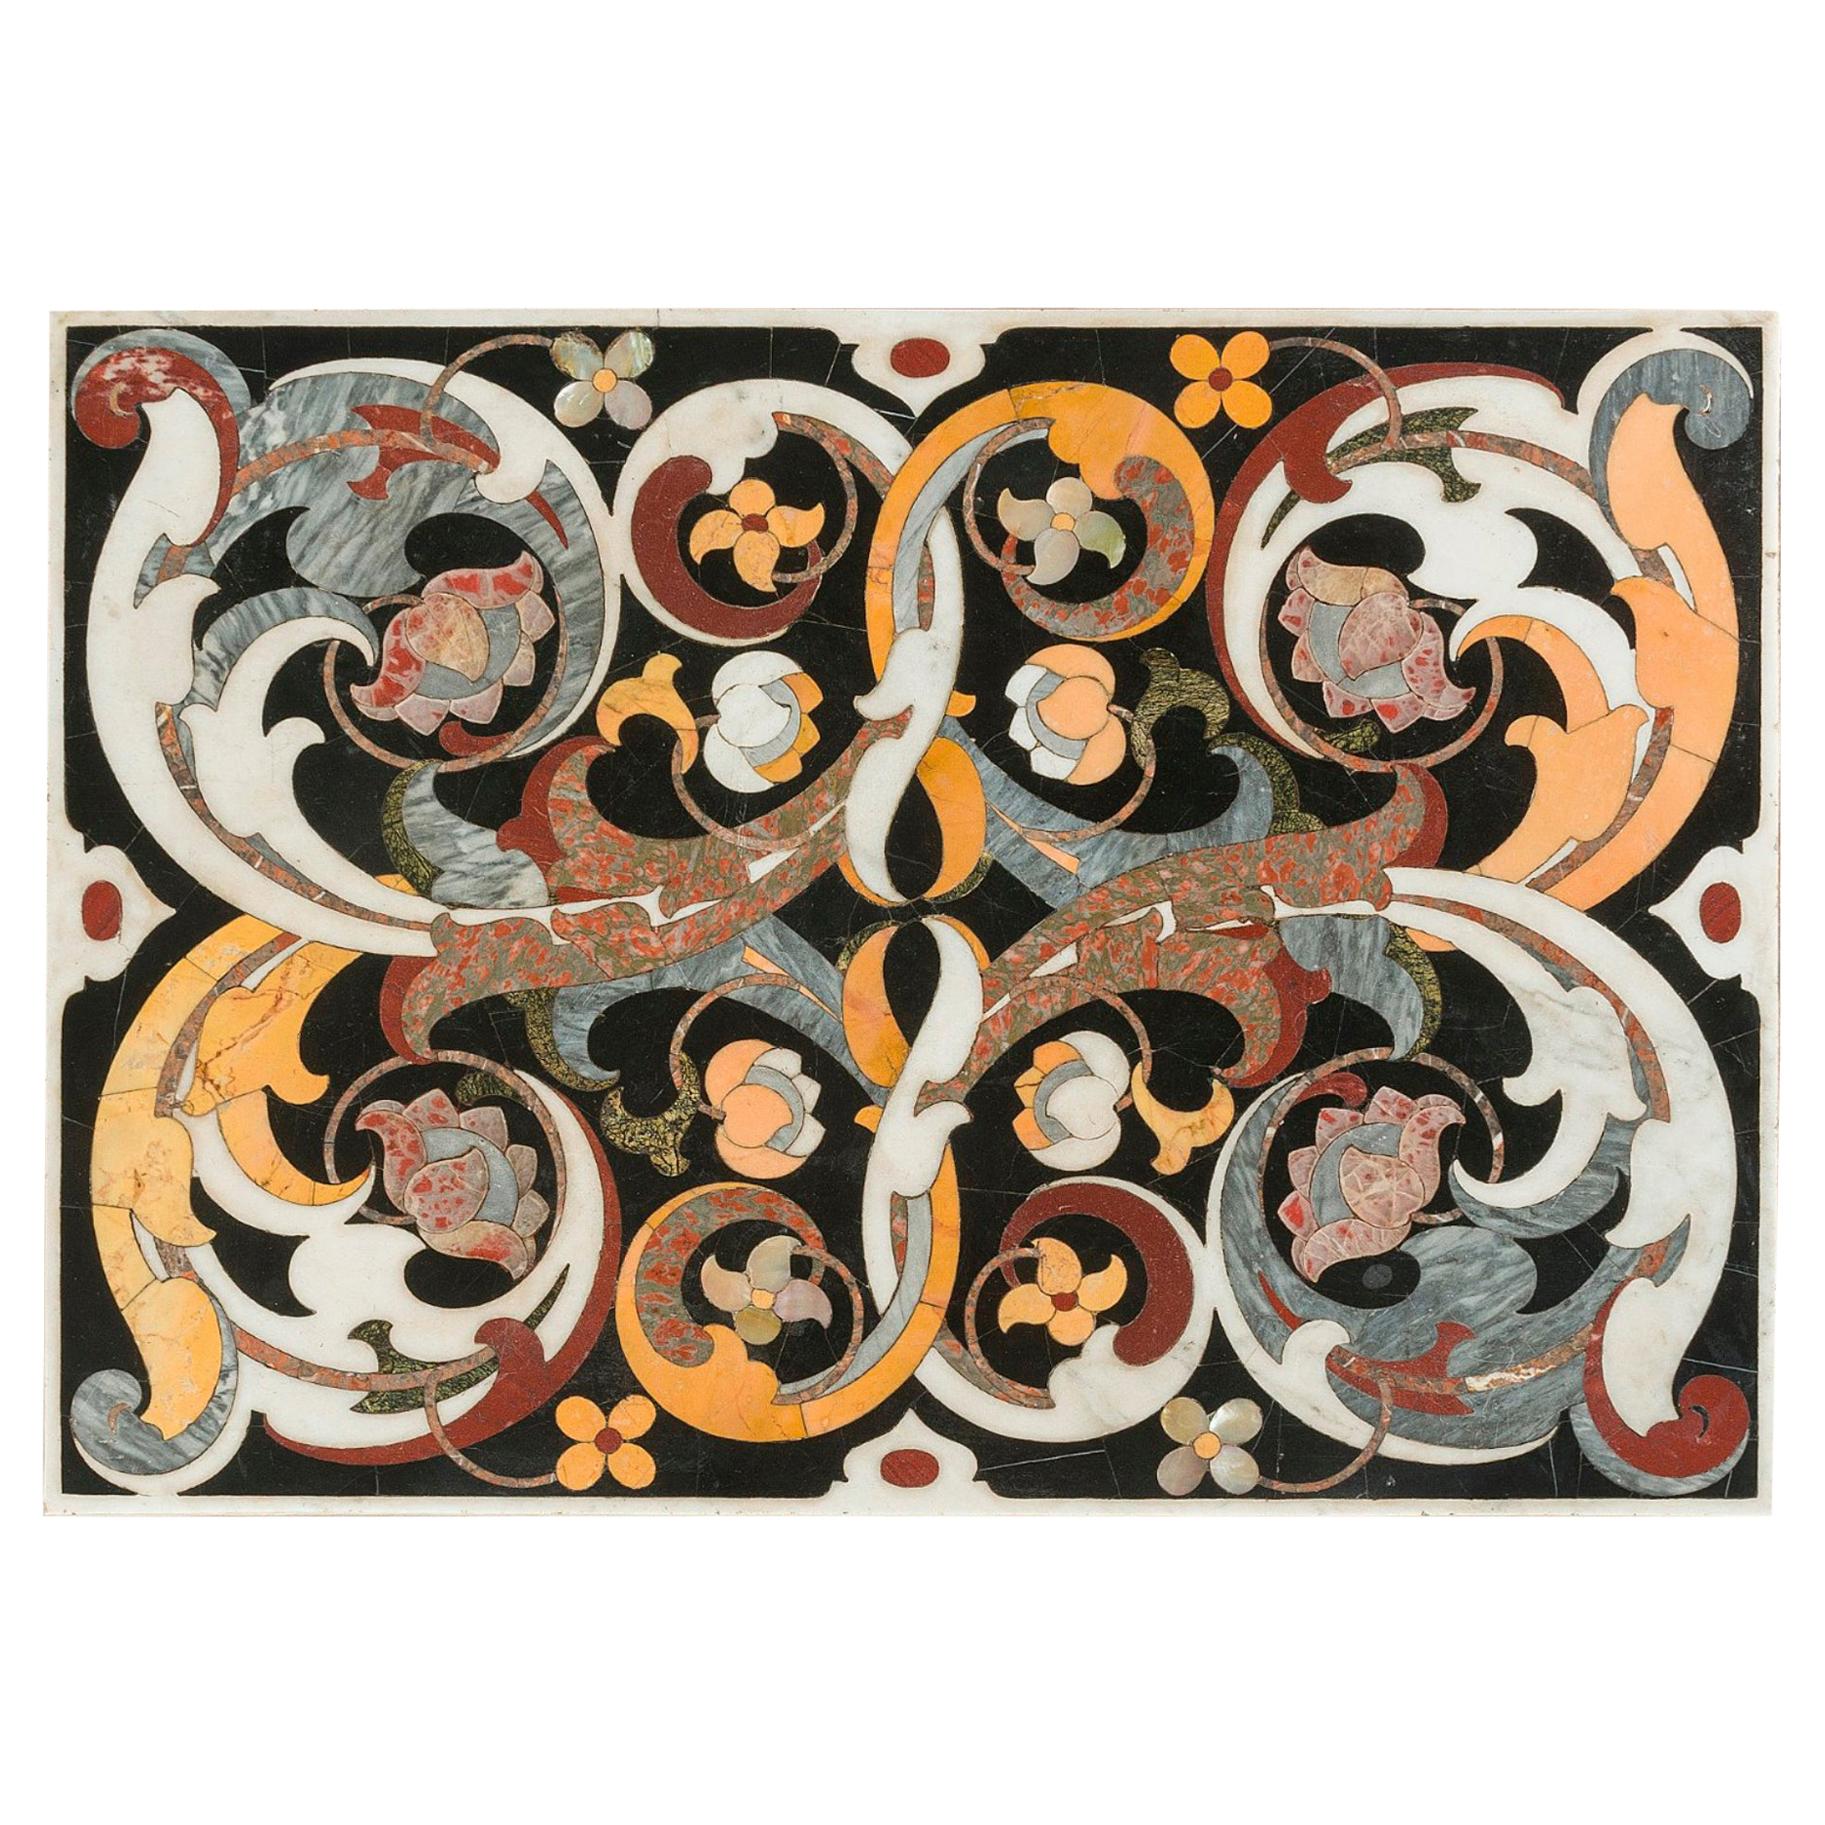 Italienischer handgefertigter schmiedeeiserner Tischrahmen des 17. Jahrhunderts mit eingelegter Marmorplatte